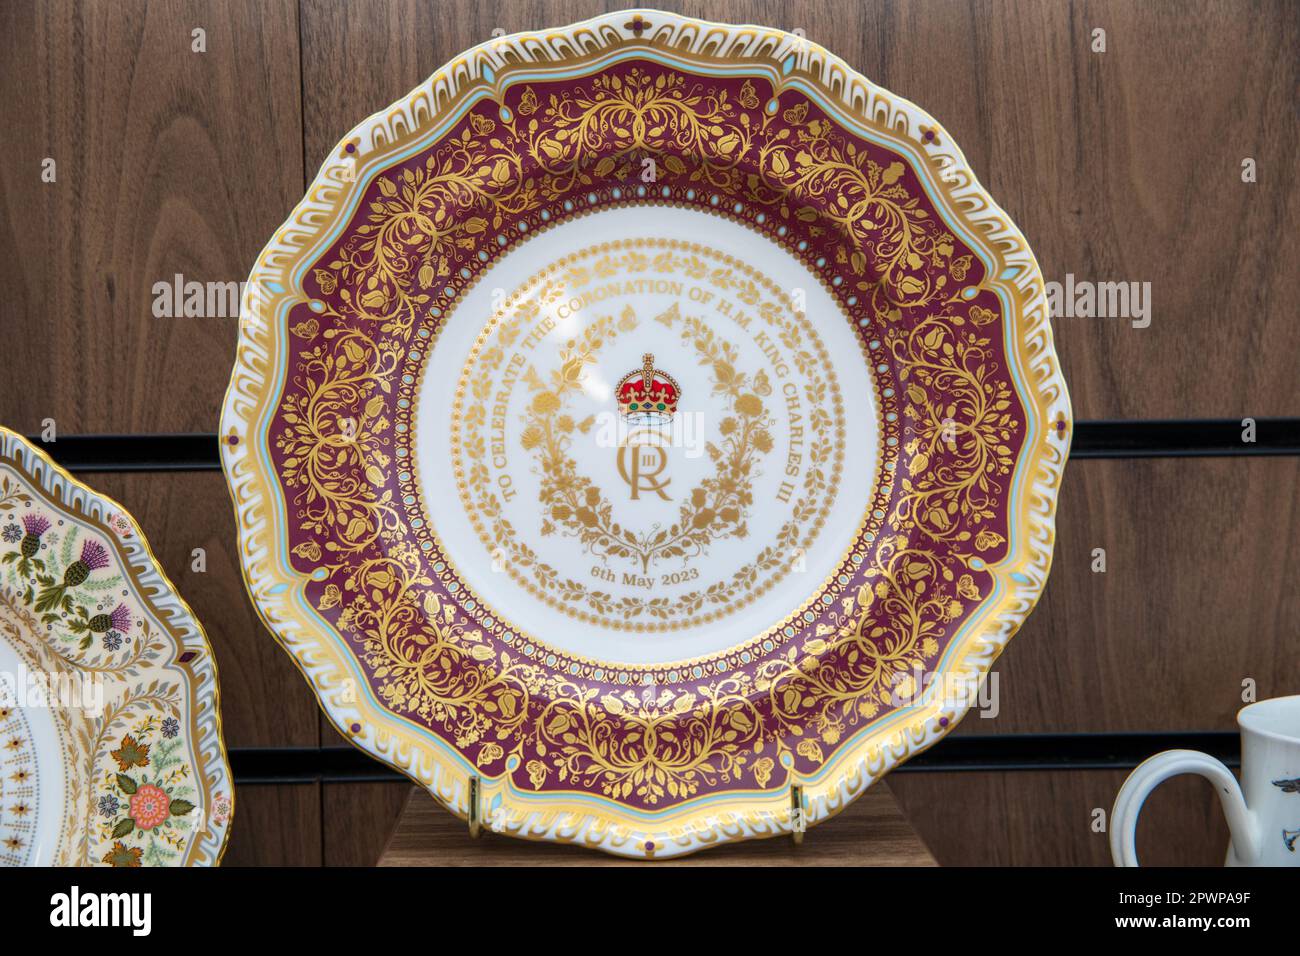 Ein Teller zu Ehren der Krönung von König Karl III. Vom Royal Crown Derby. Stockfoto